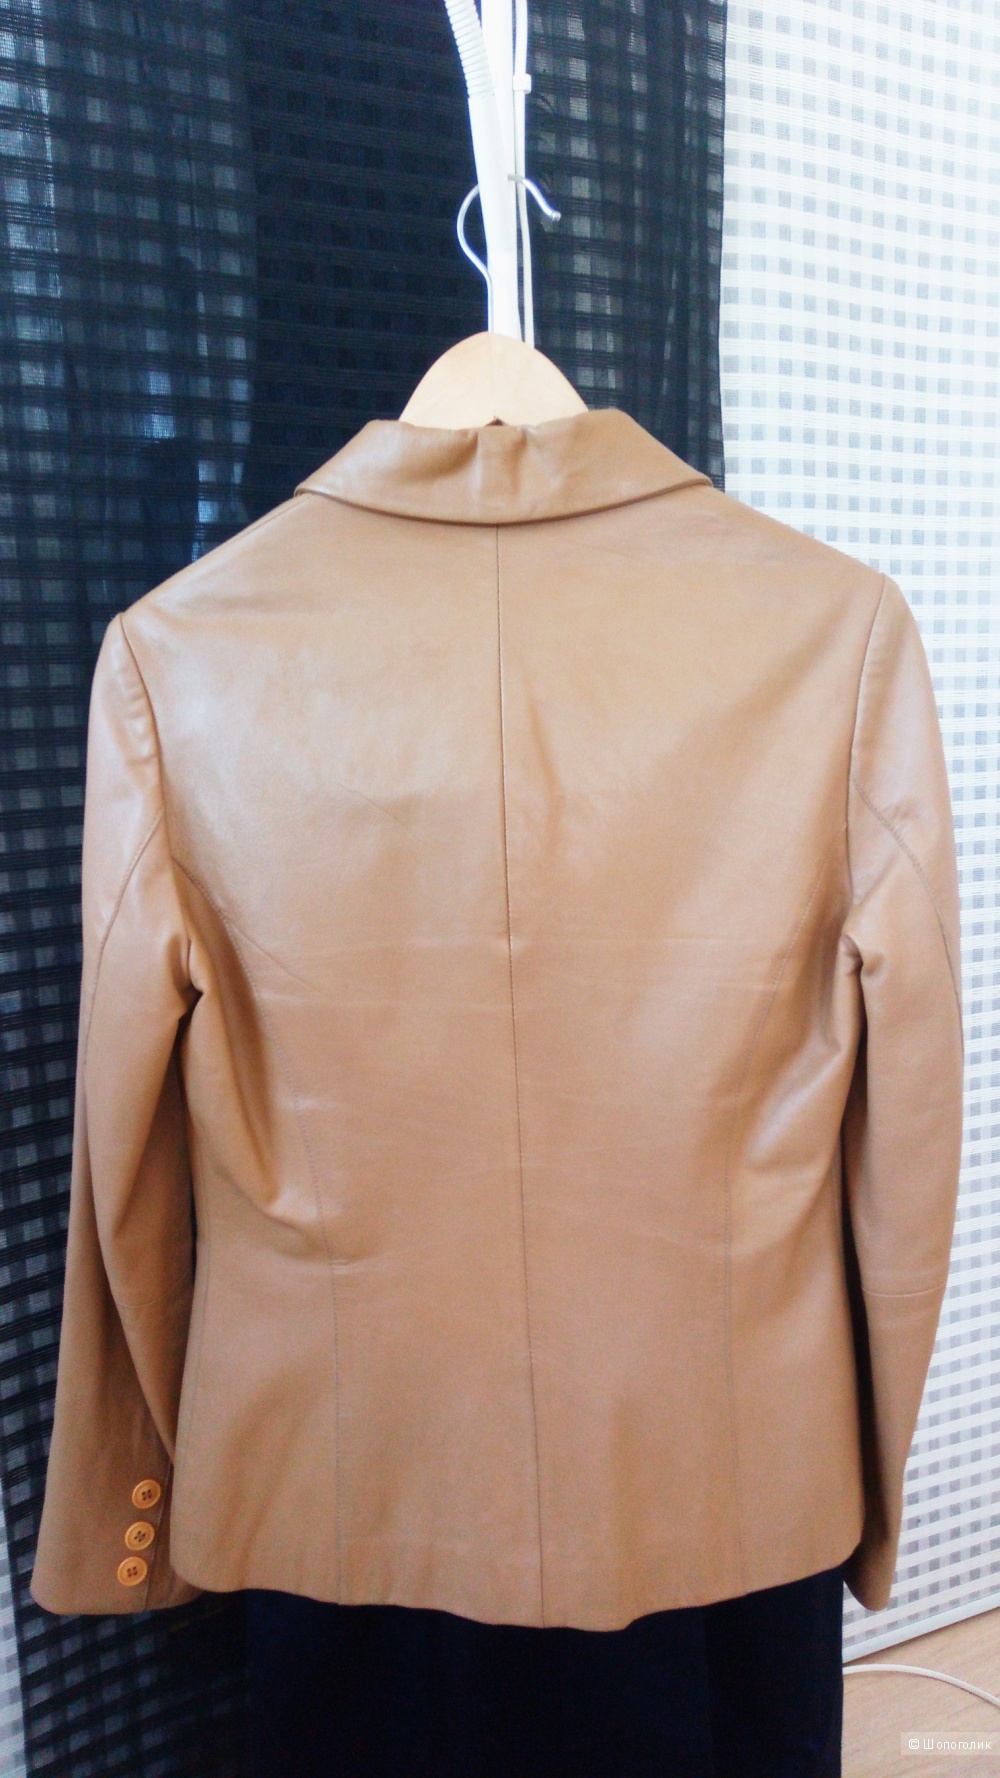 Кожаная куртка-пиджак, 12 размер на 44-46 русский